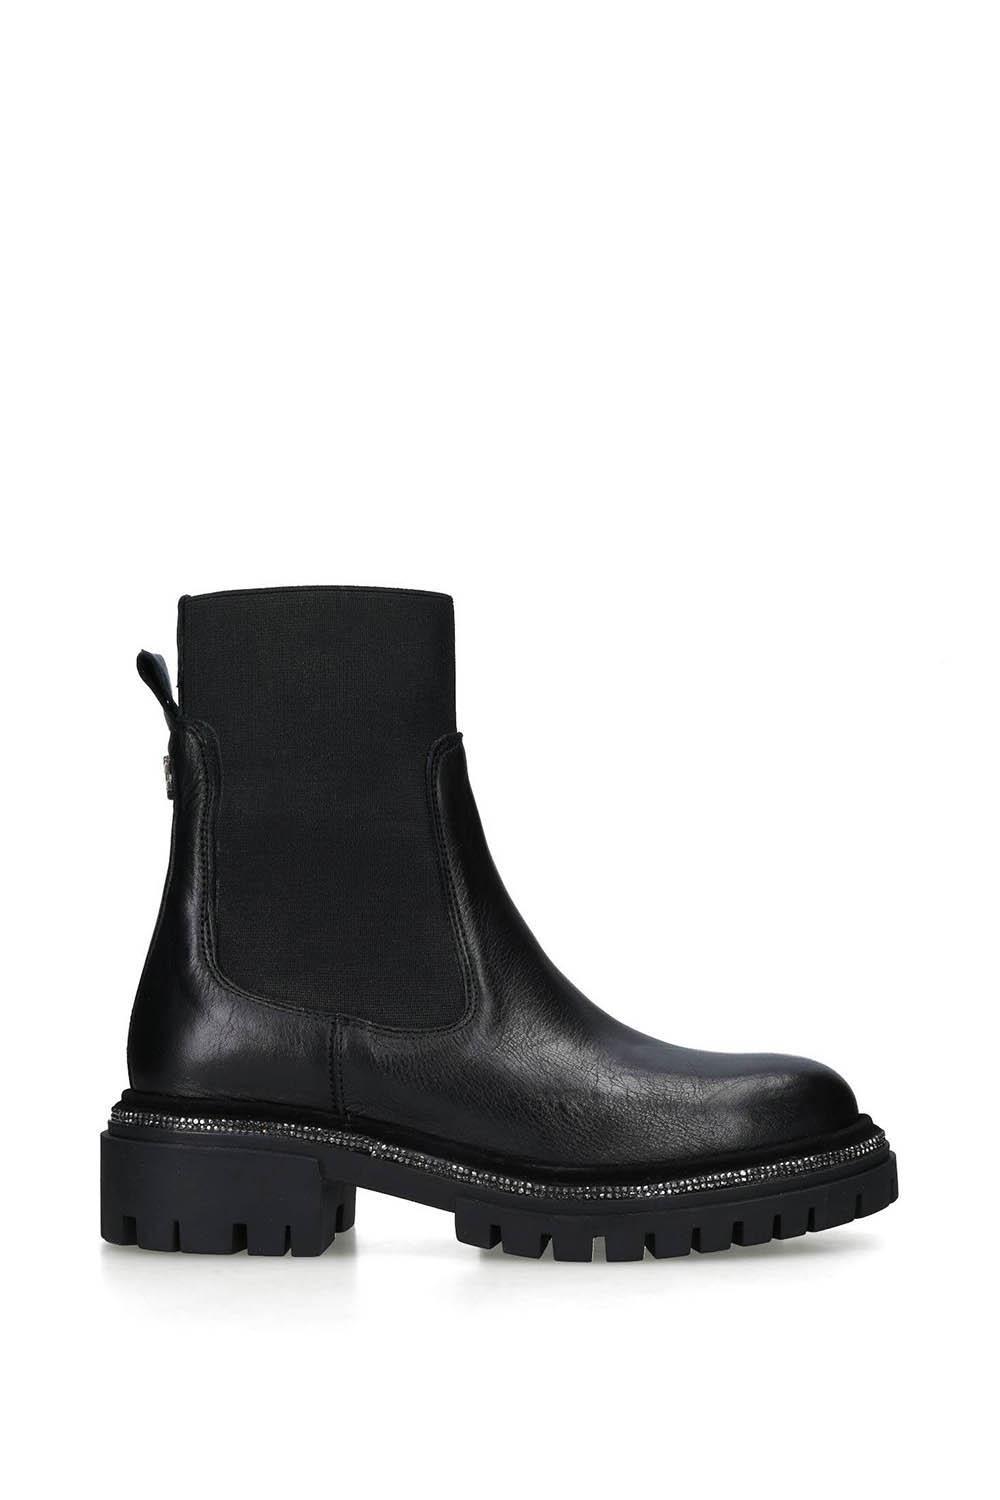 Кожаные ботинки Dazzle Ankle Carvela, черный кожаные ботинки secure lace up 2 carvela черный